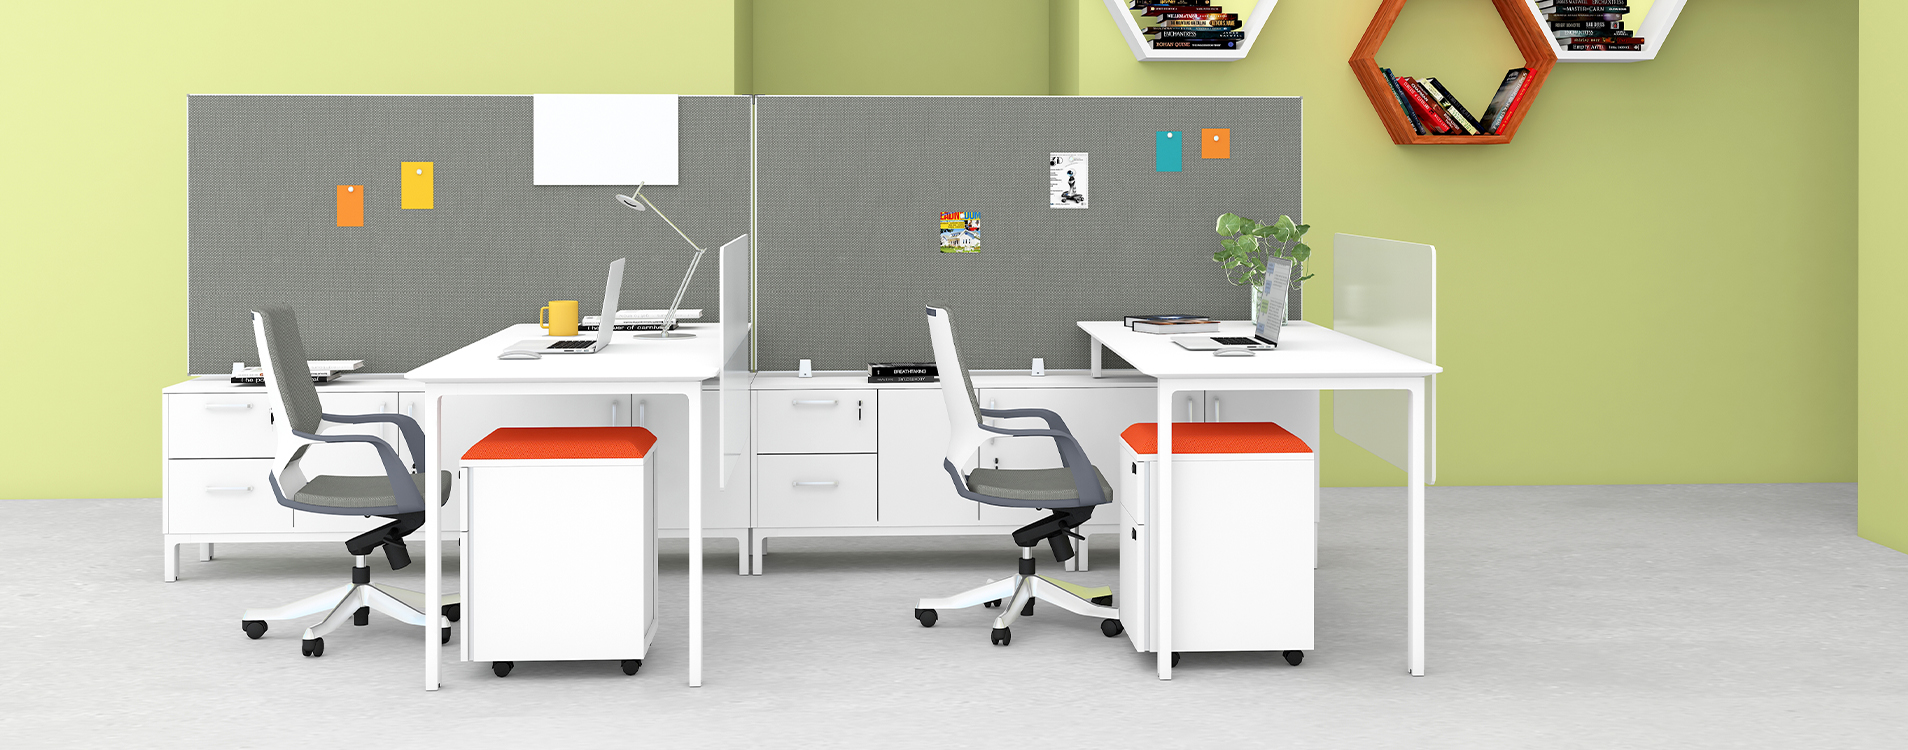 Meet Office Desk Furniture Monarch Ergo